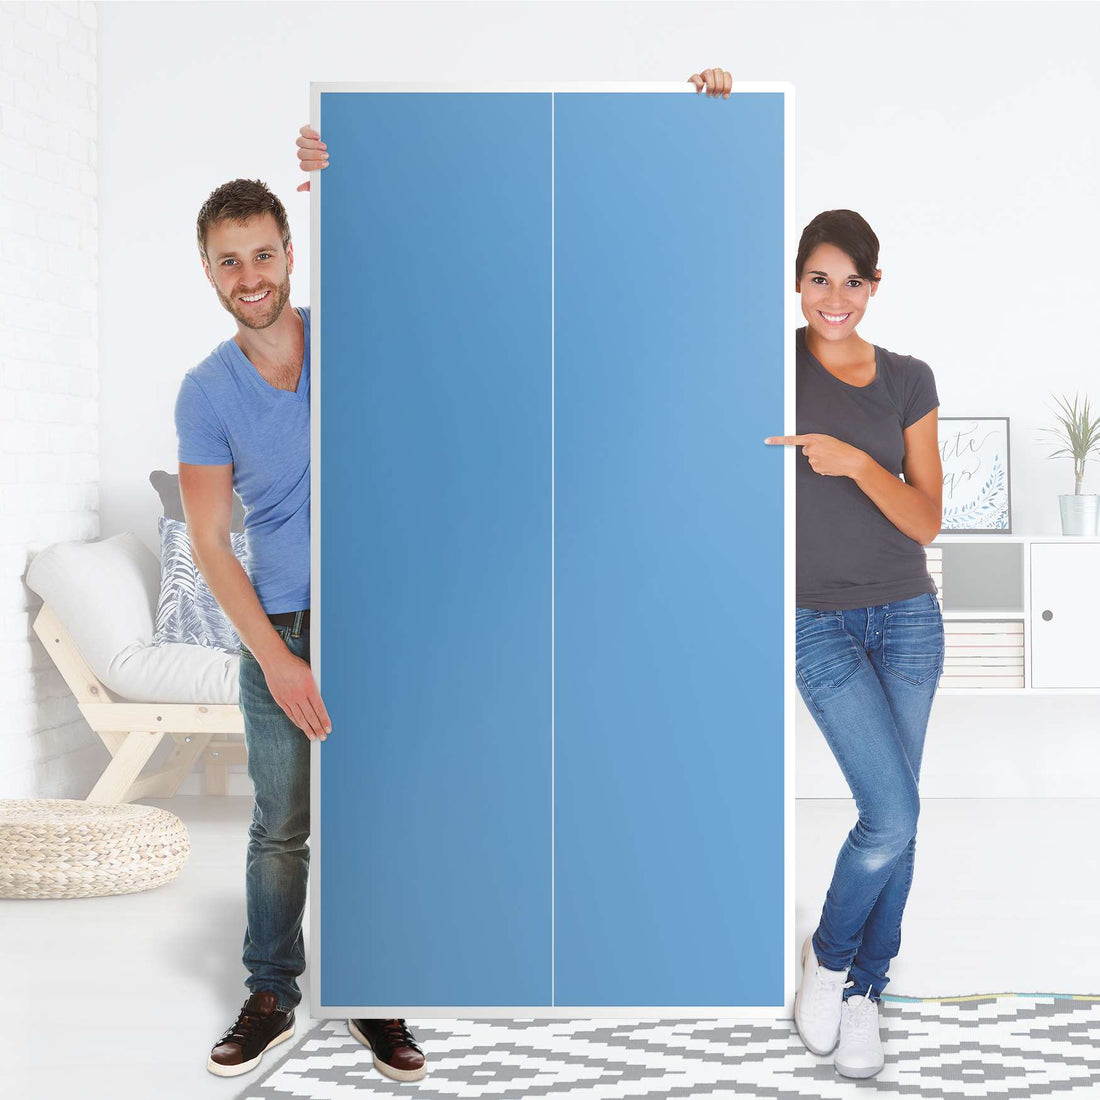 Klebefolie für Möbel Blau Light - IKEA Pax Schrank 201 cm Höhe - 2 Türen - Folie